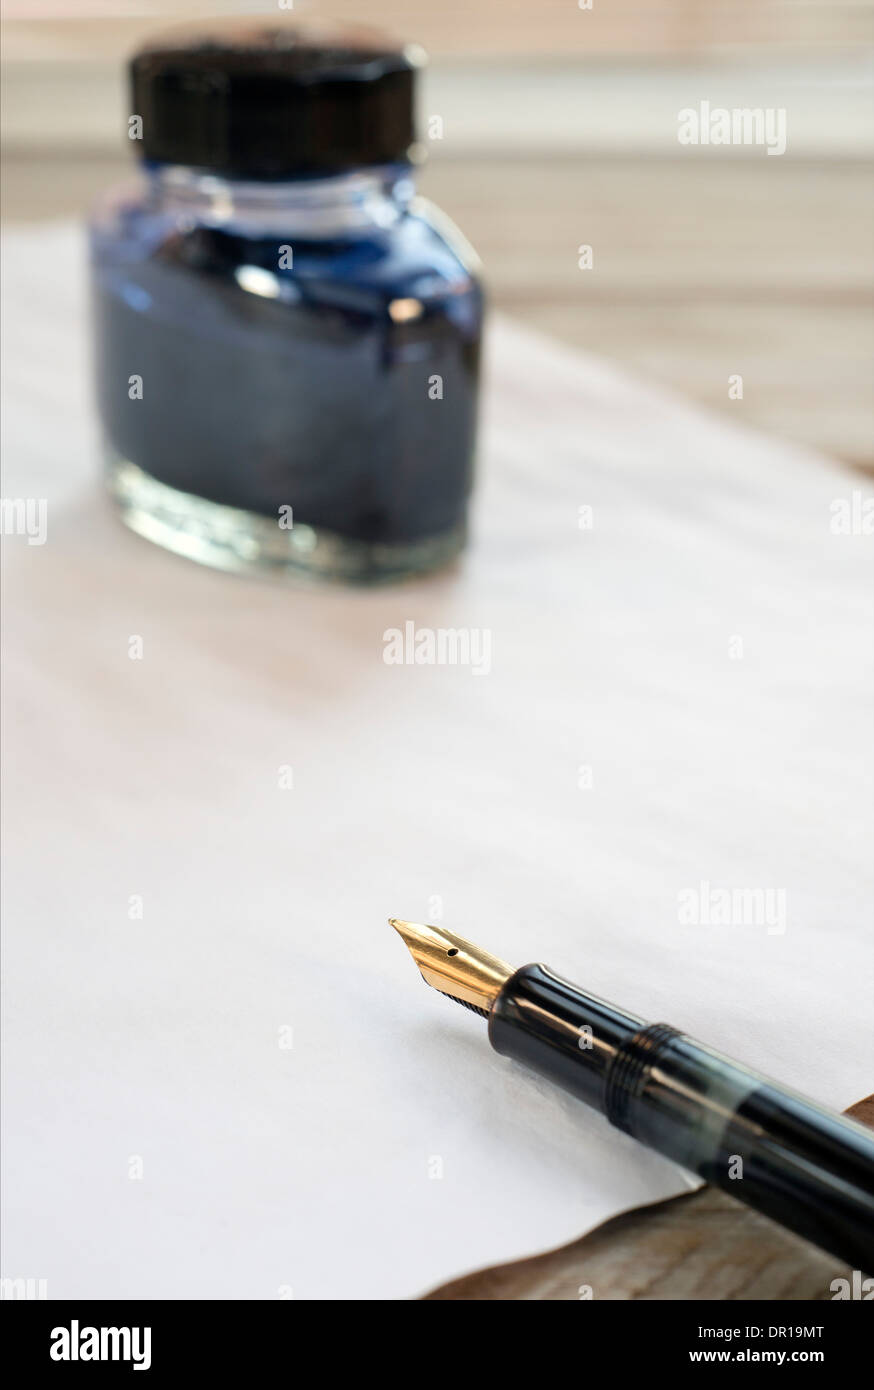 Füllfederhalter, Tinte und Papier auf einem Holztisch Stockfoto